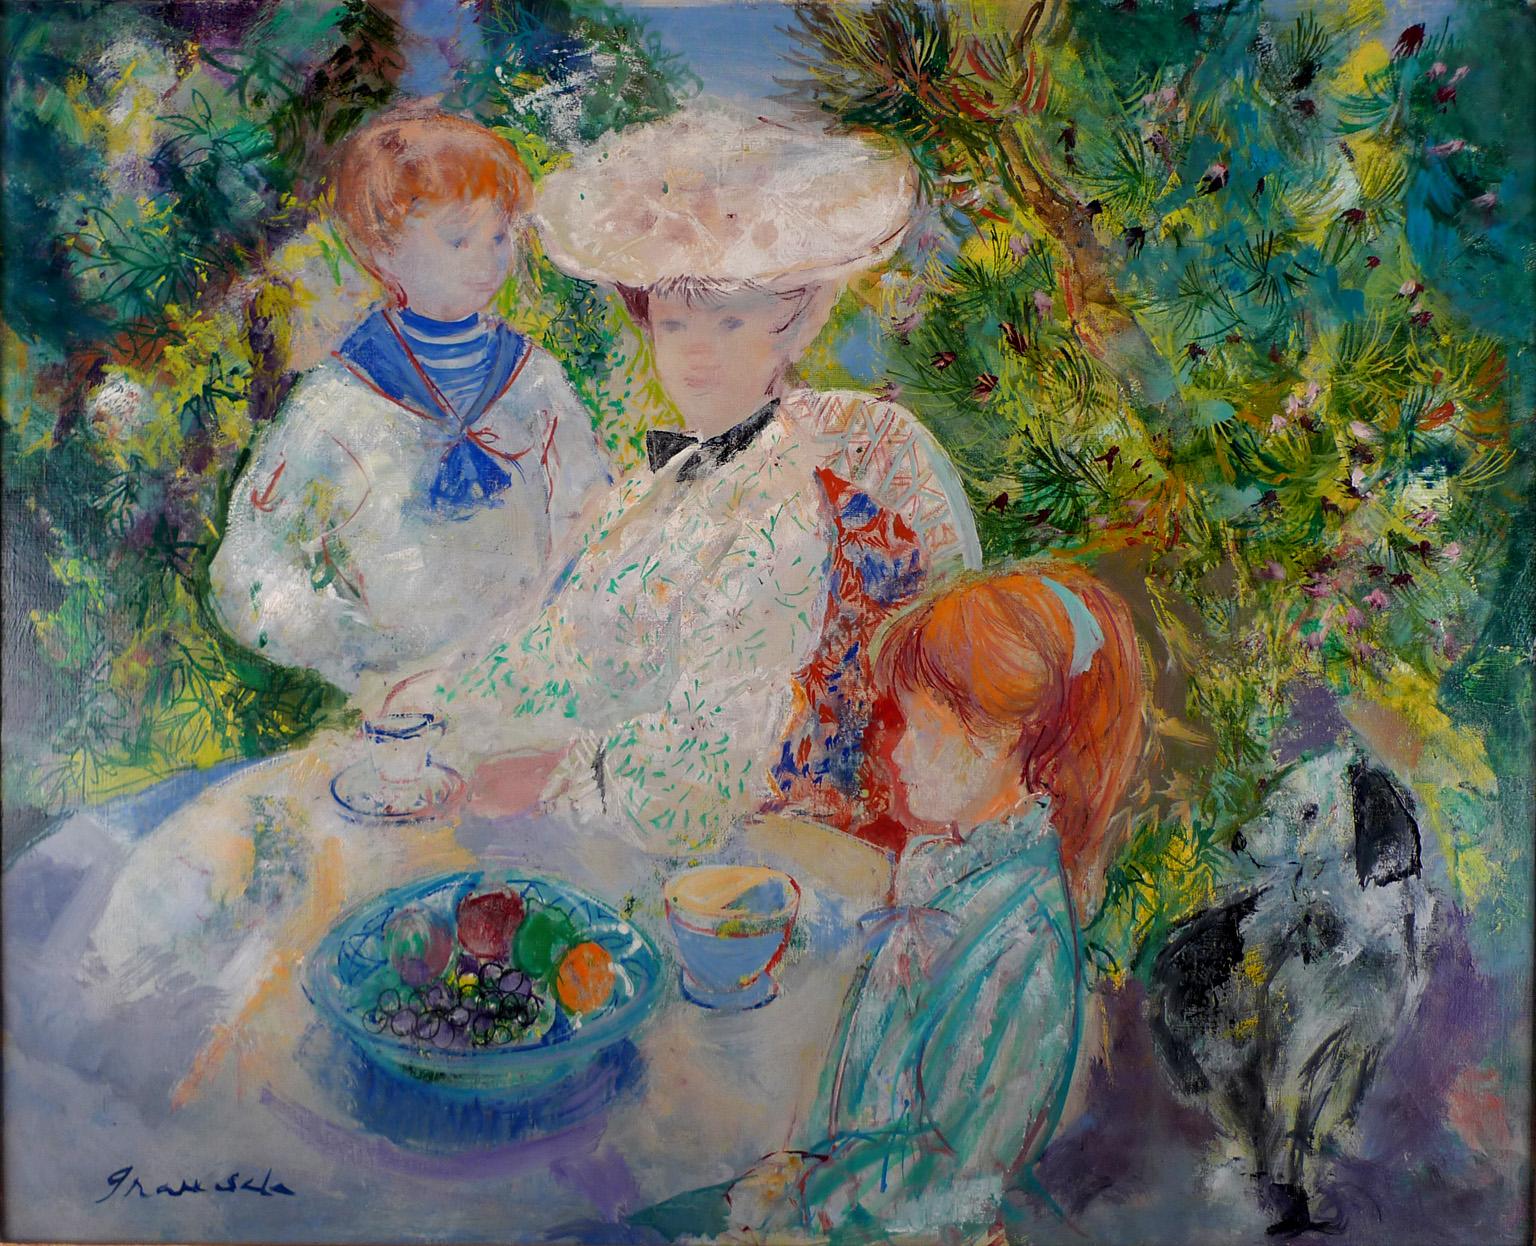 "Le petit déjeuner dans le jardin", 20th Century oil on canvas by E. Grau Sala